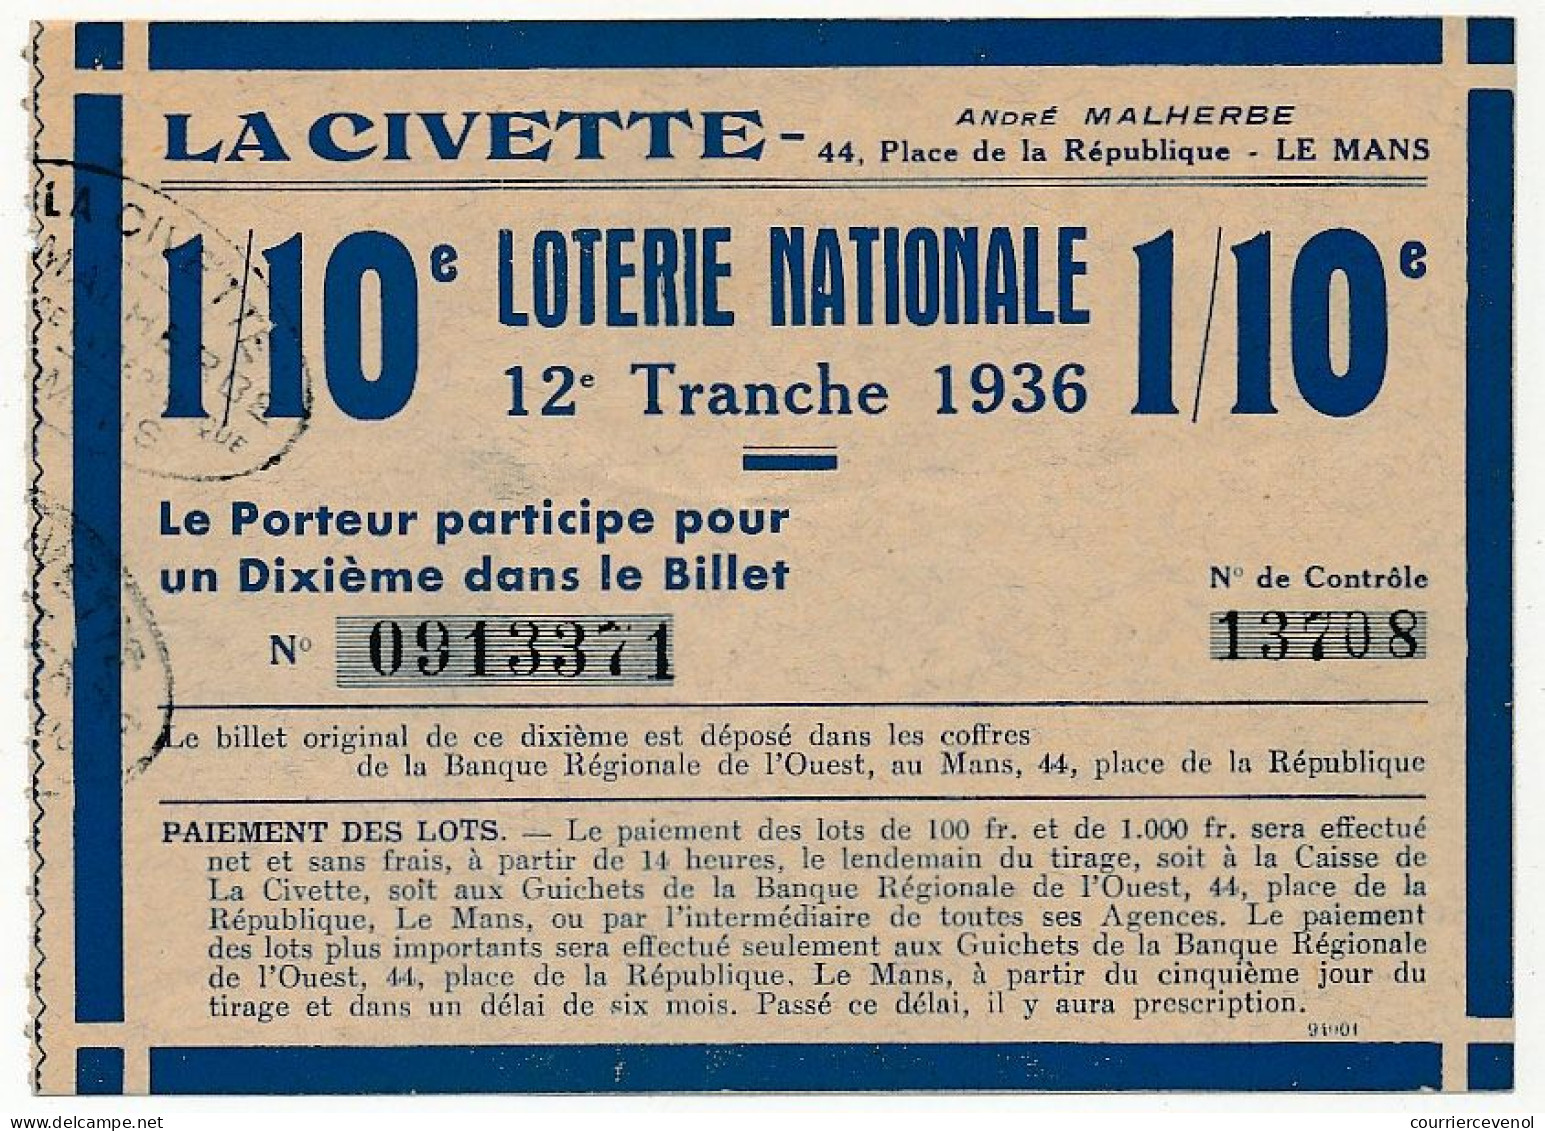 FRANCE - Loterie Nationale - La Civette (Le Mans) - 1/10ème - 12ème Tranche 1936 - Lotterielose